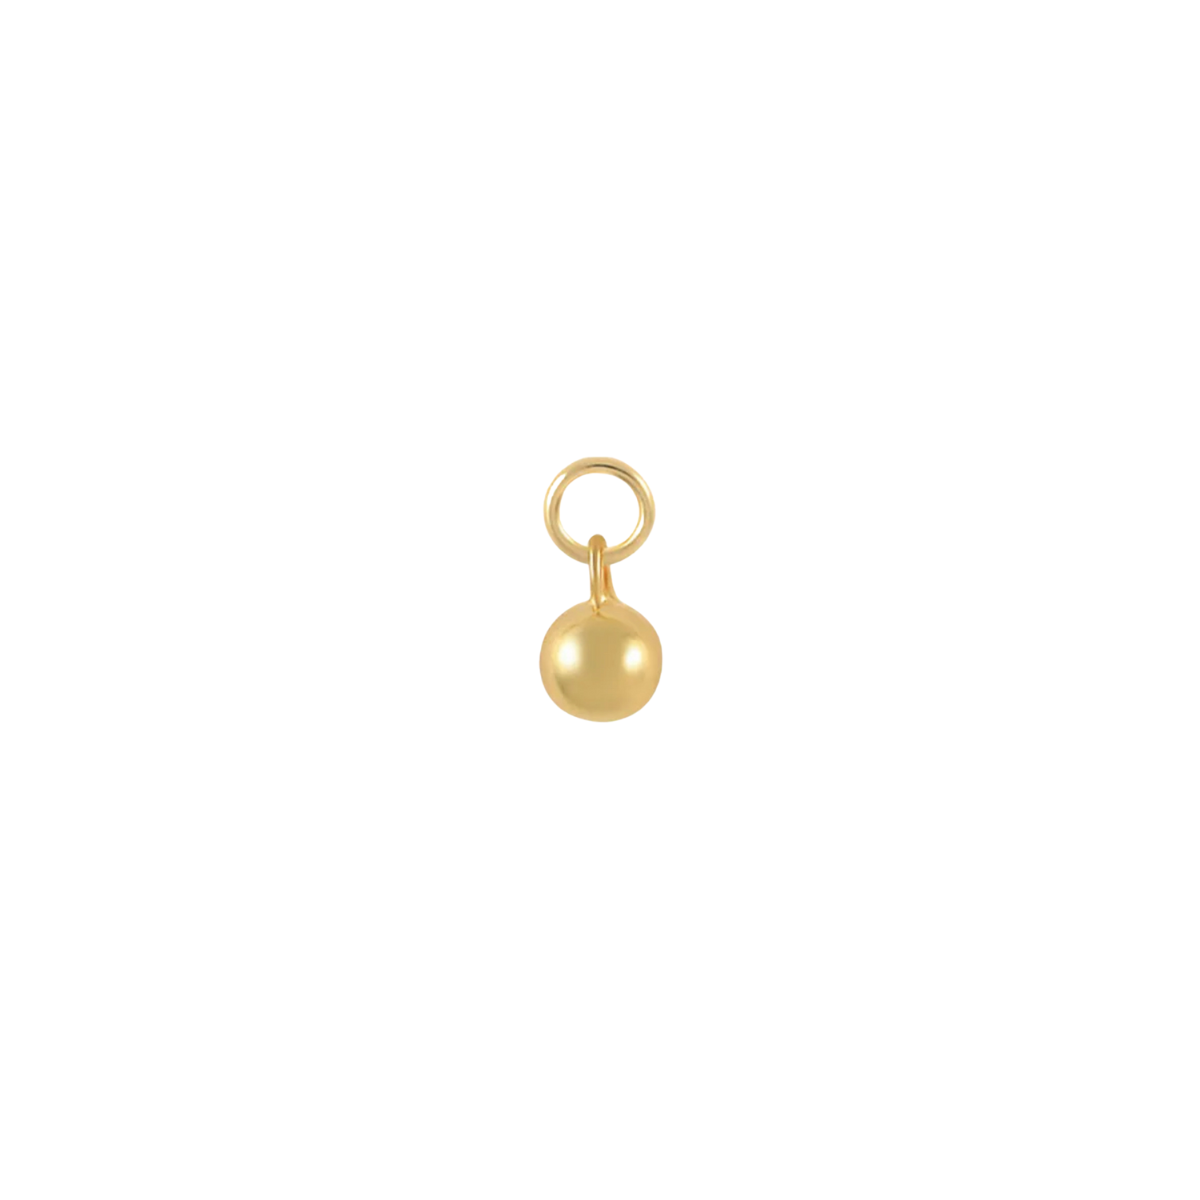 Belle 18k Gold Plated Earring Charm Pre Order